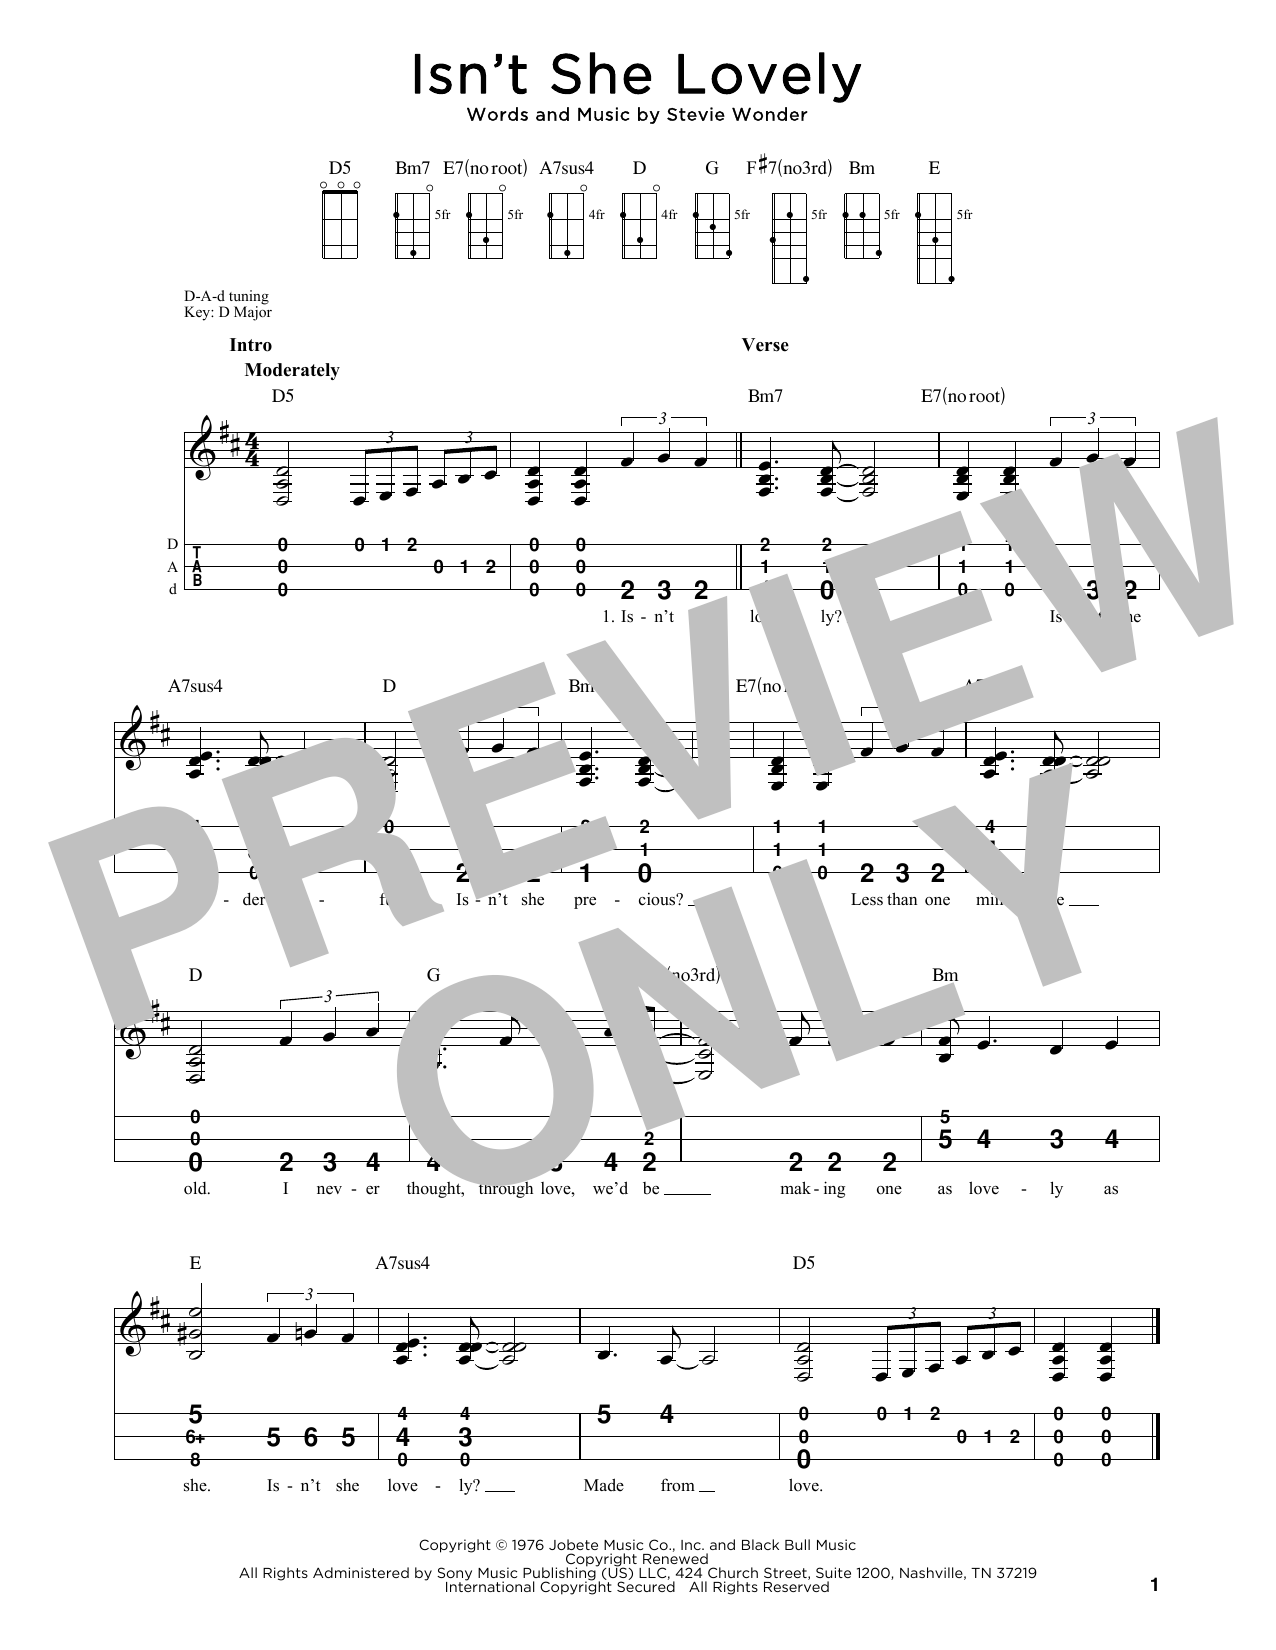 Stevie Wonder Isn't She Lovely (arr. Steven B. Eulberg) Sheet Music Notes & Chords for Dulcimer - Download or Print PDF